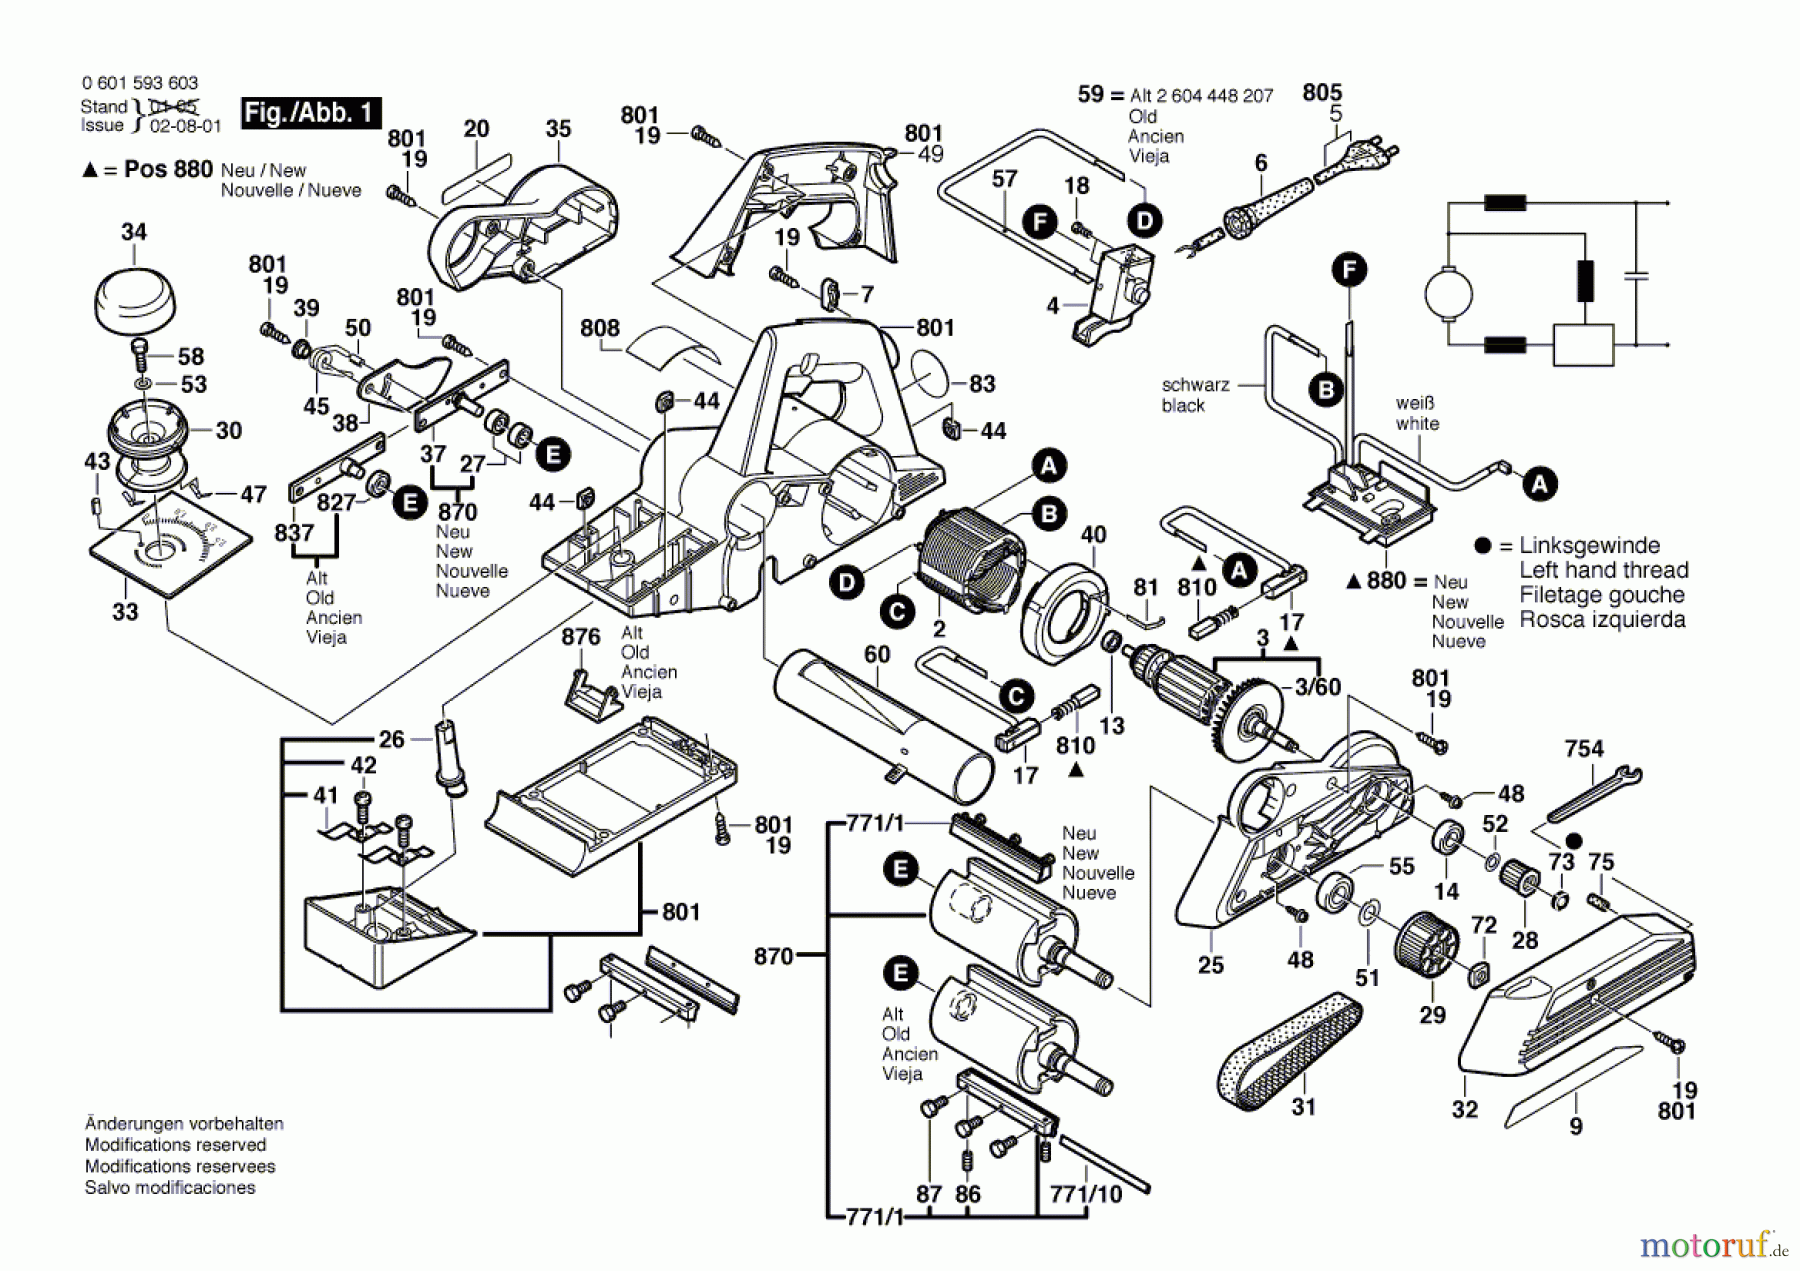  Bosch Werkzeug Handhobel GHO 36-82 C Seite 1